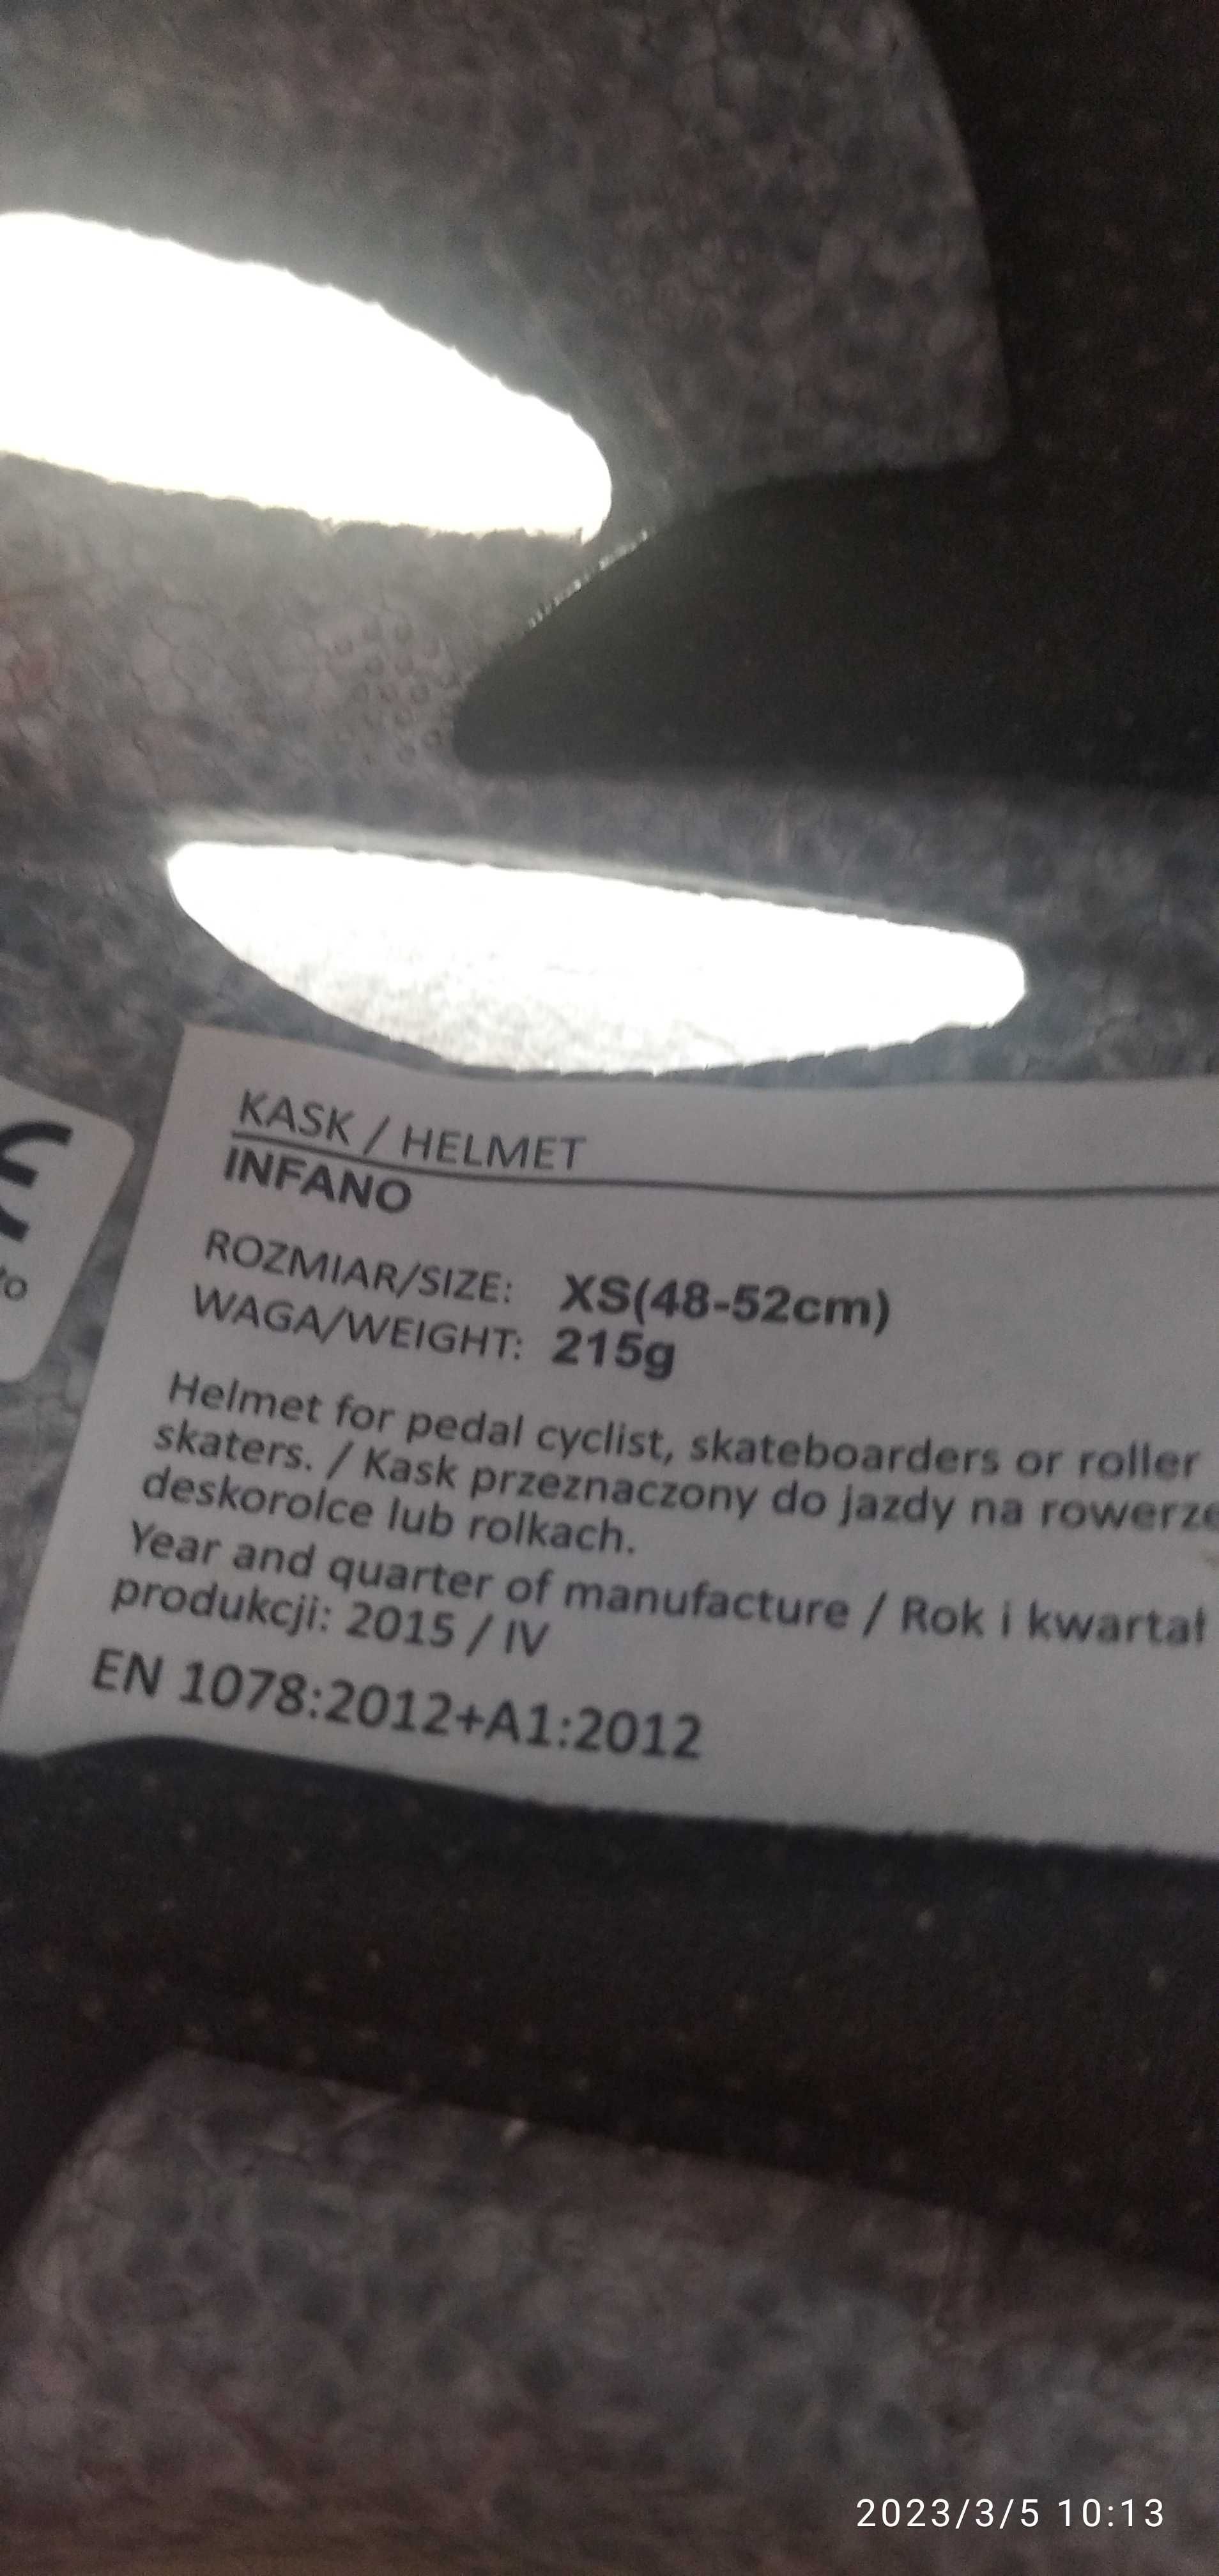 kask markowy dla dziecka na rower rolki itp. KROSS INFANO r.XS 48-52cm